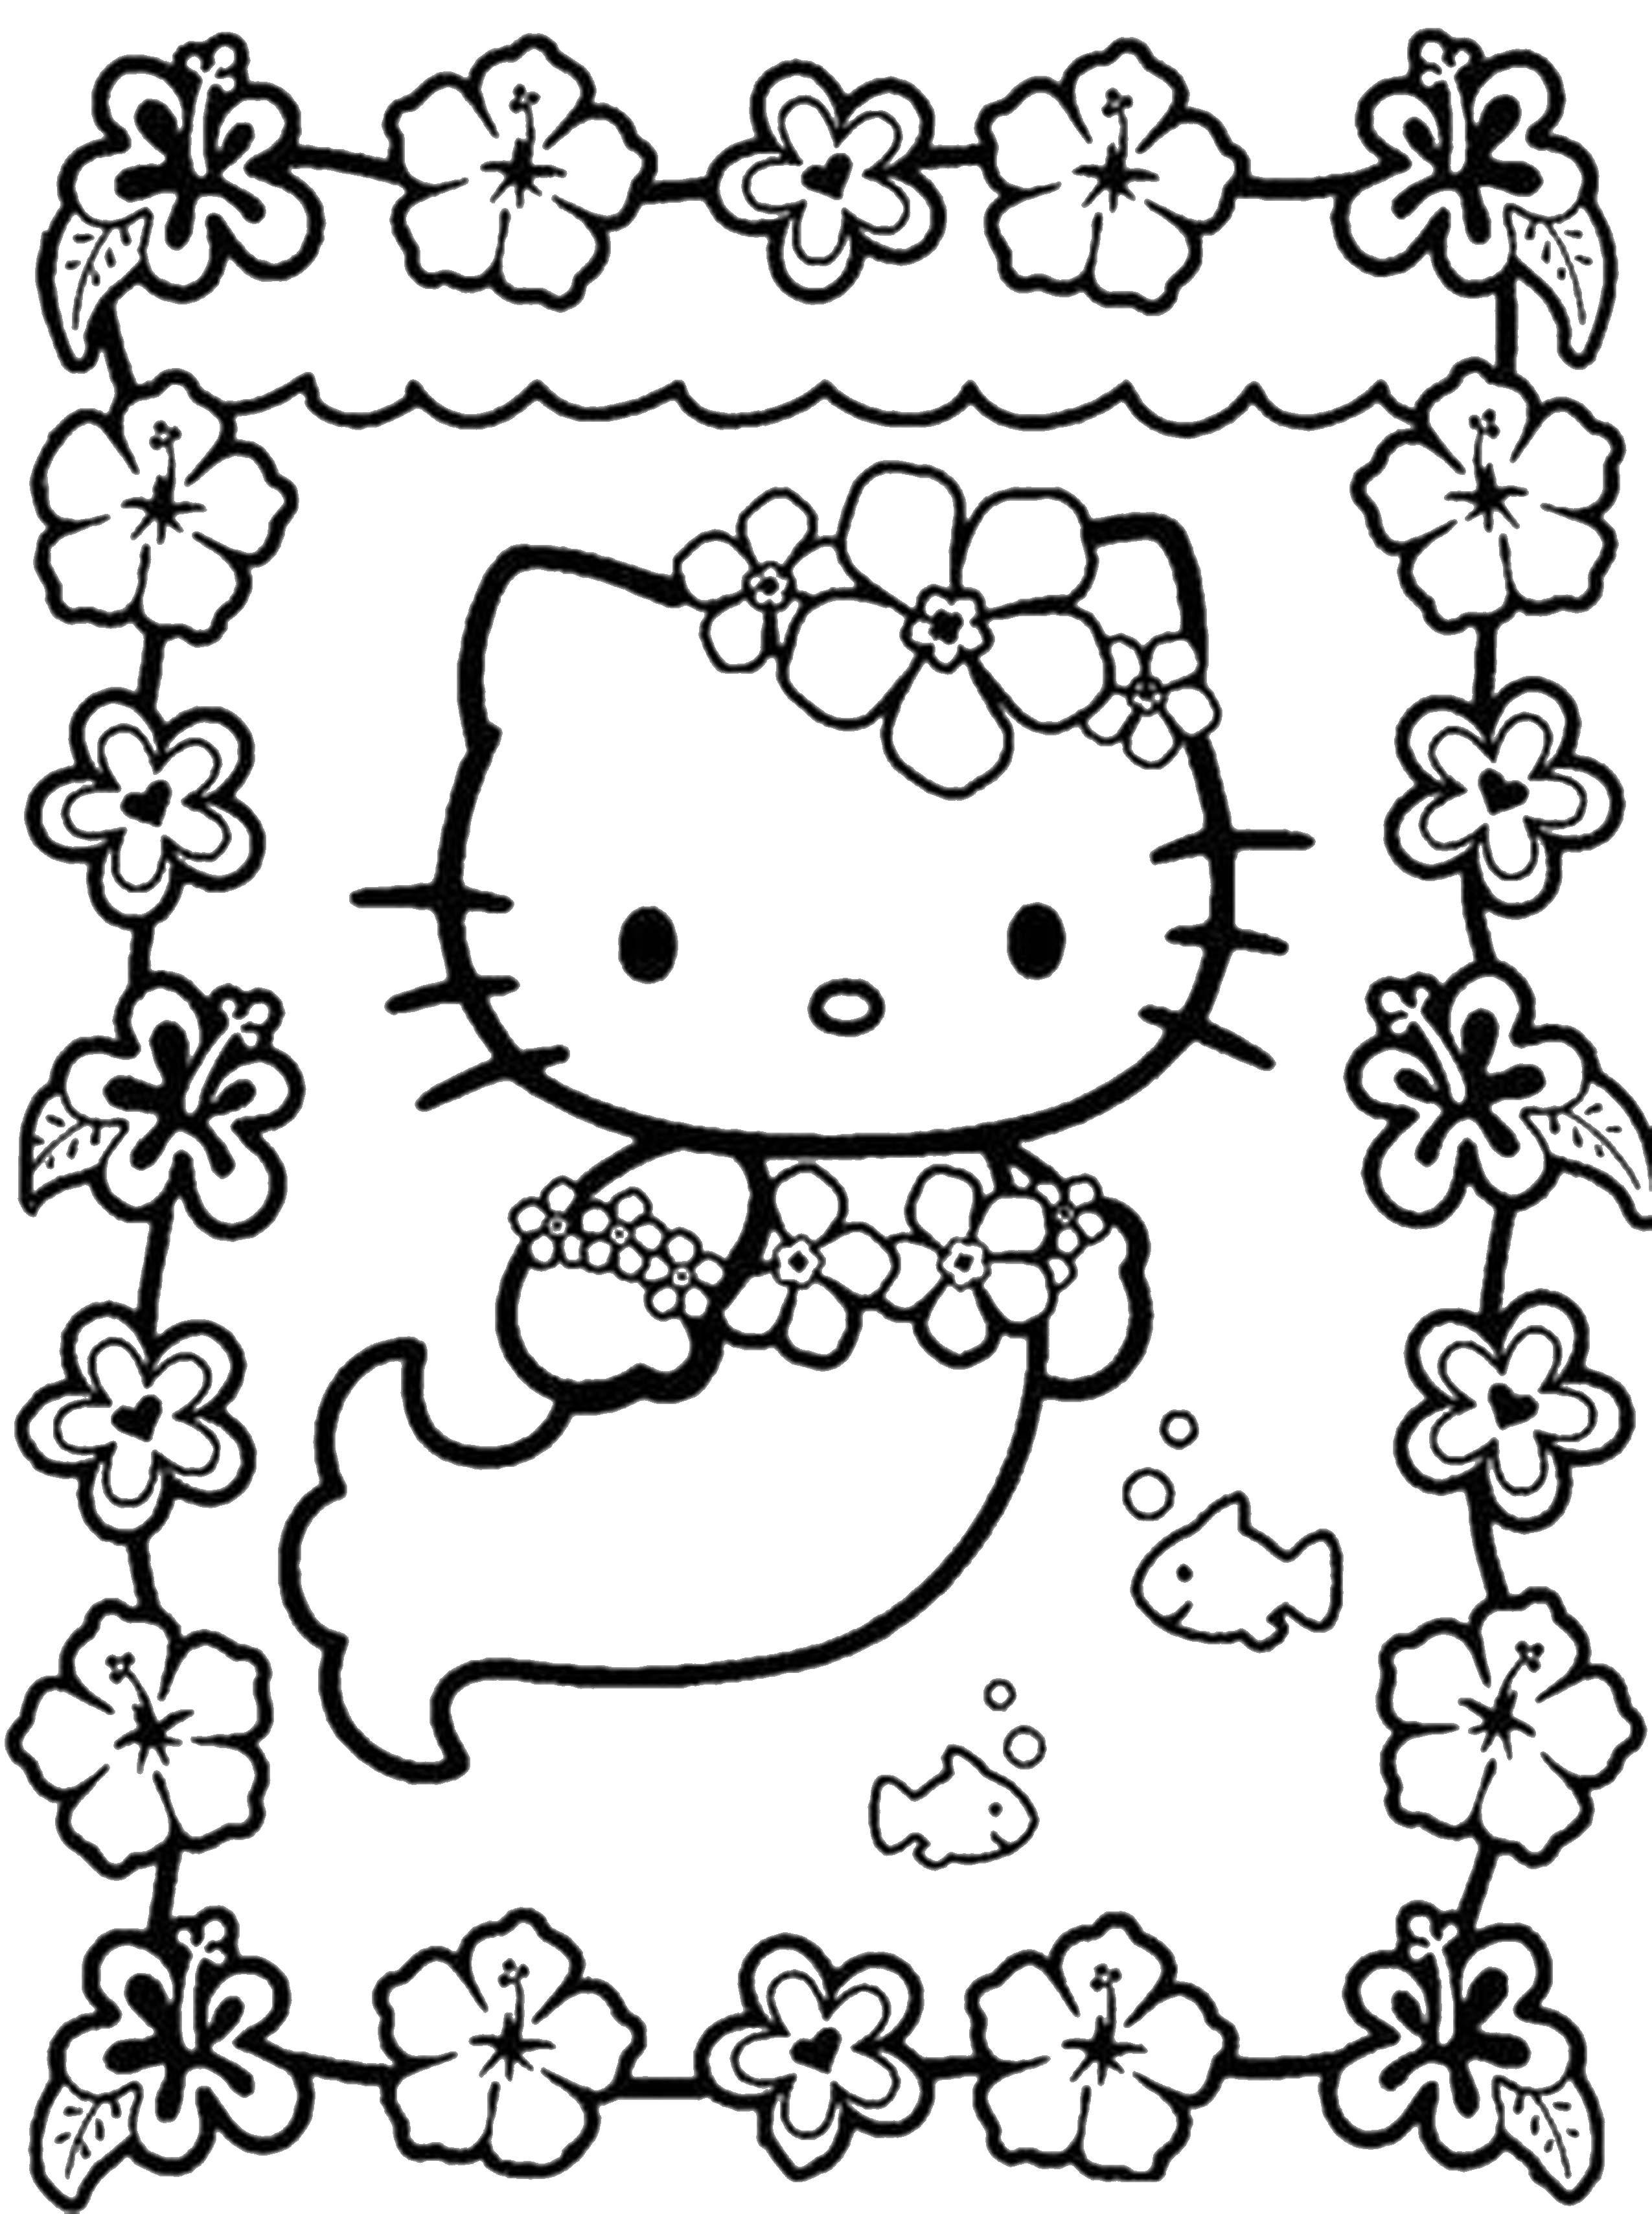 Coloring Mermaid kitty. Category Hello Kitty. Tags:  Mermaid, Kitty.